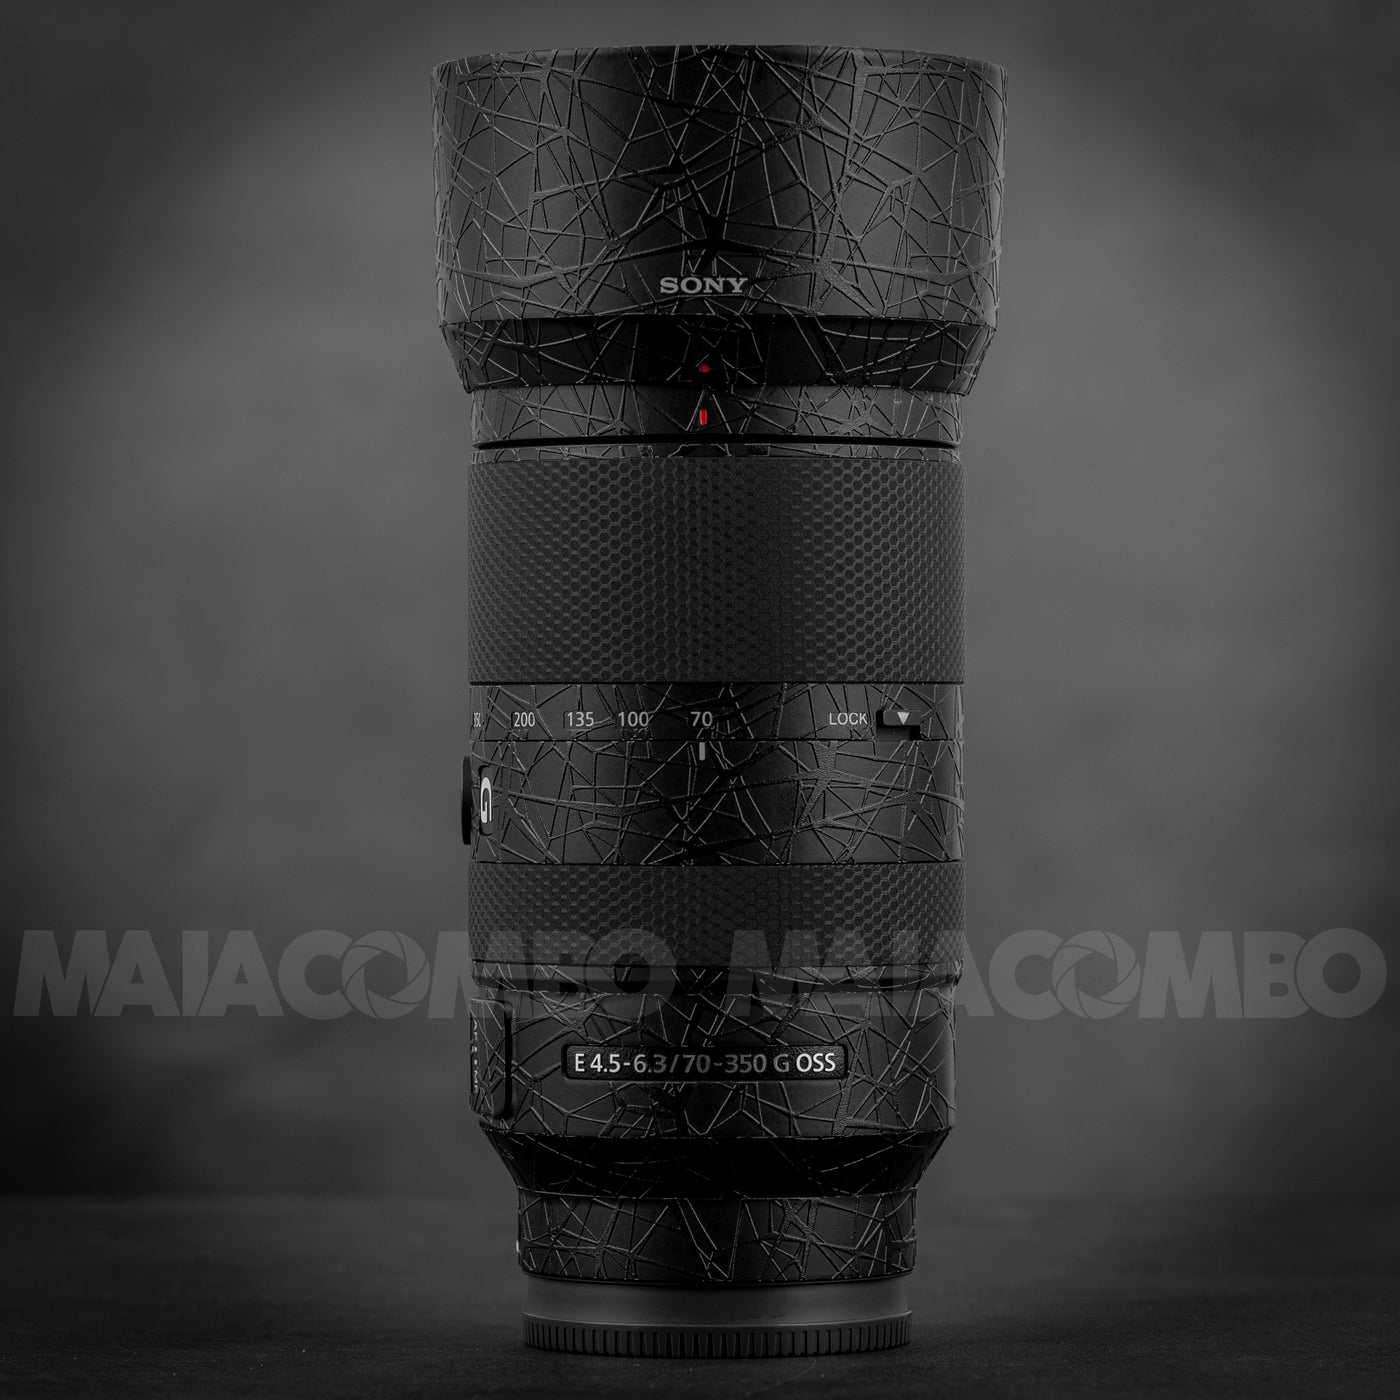 SONY E 70-350mm F4.5-6.3 G OSS (APSC) Lens Skin